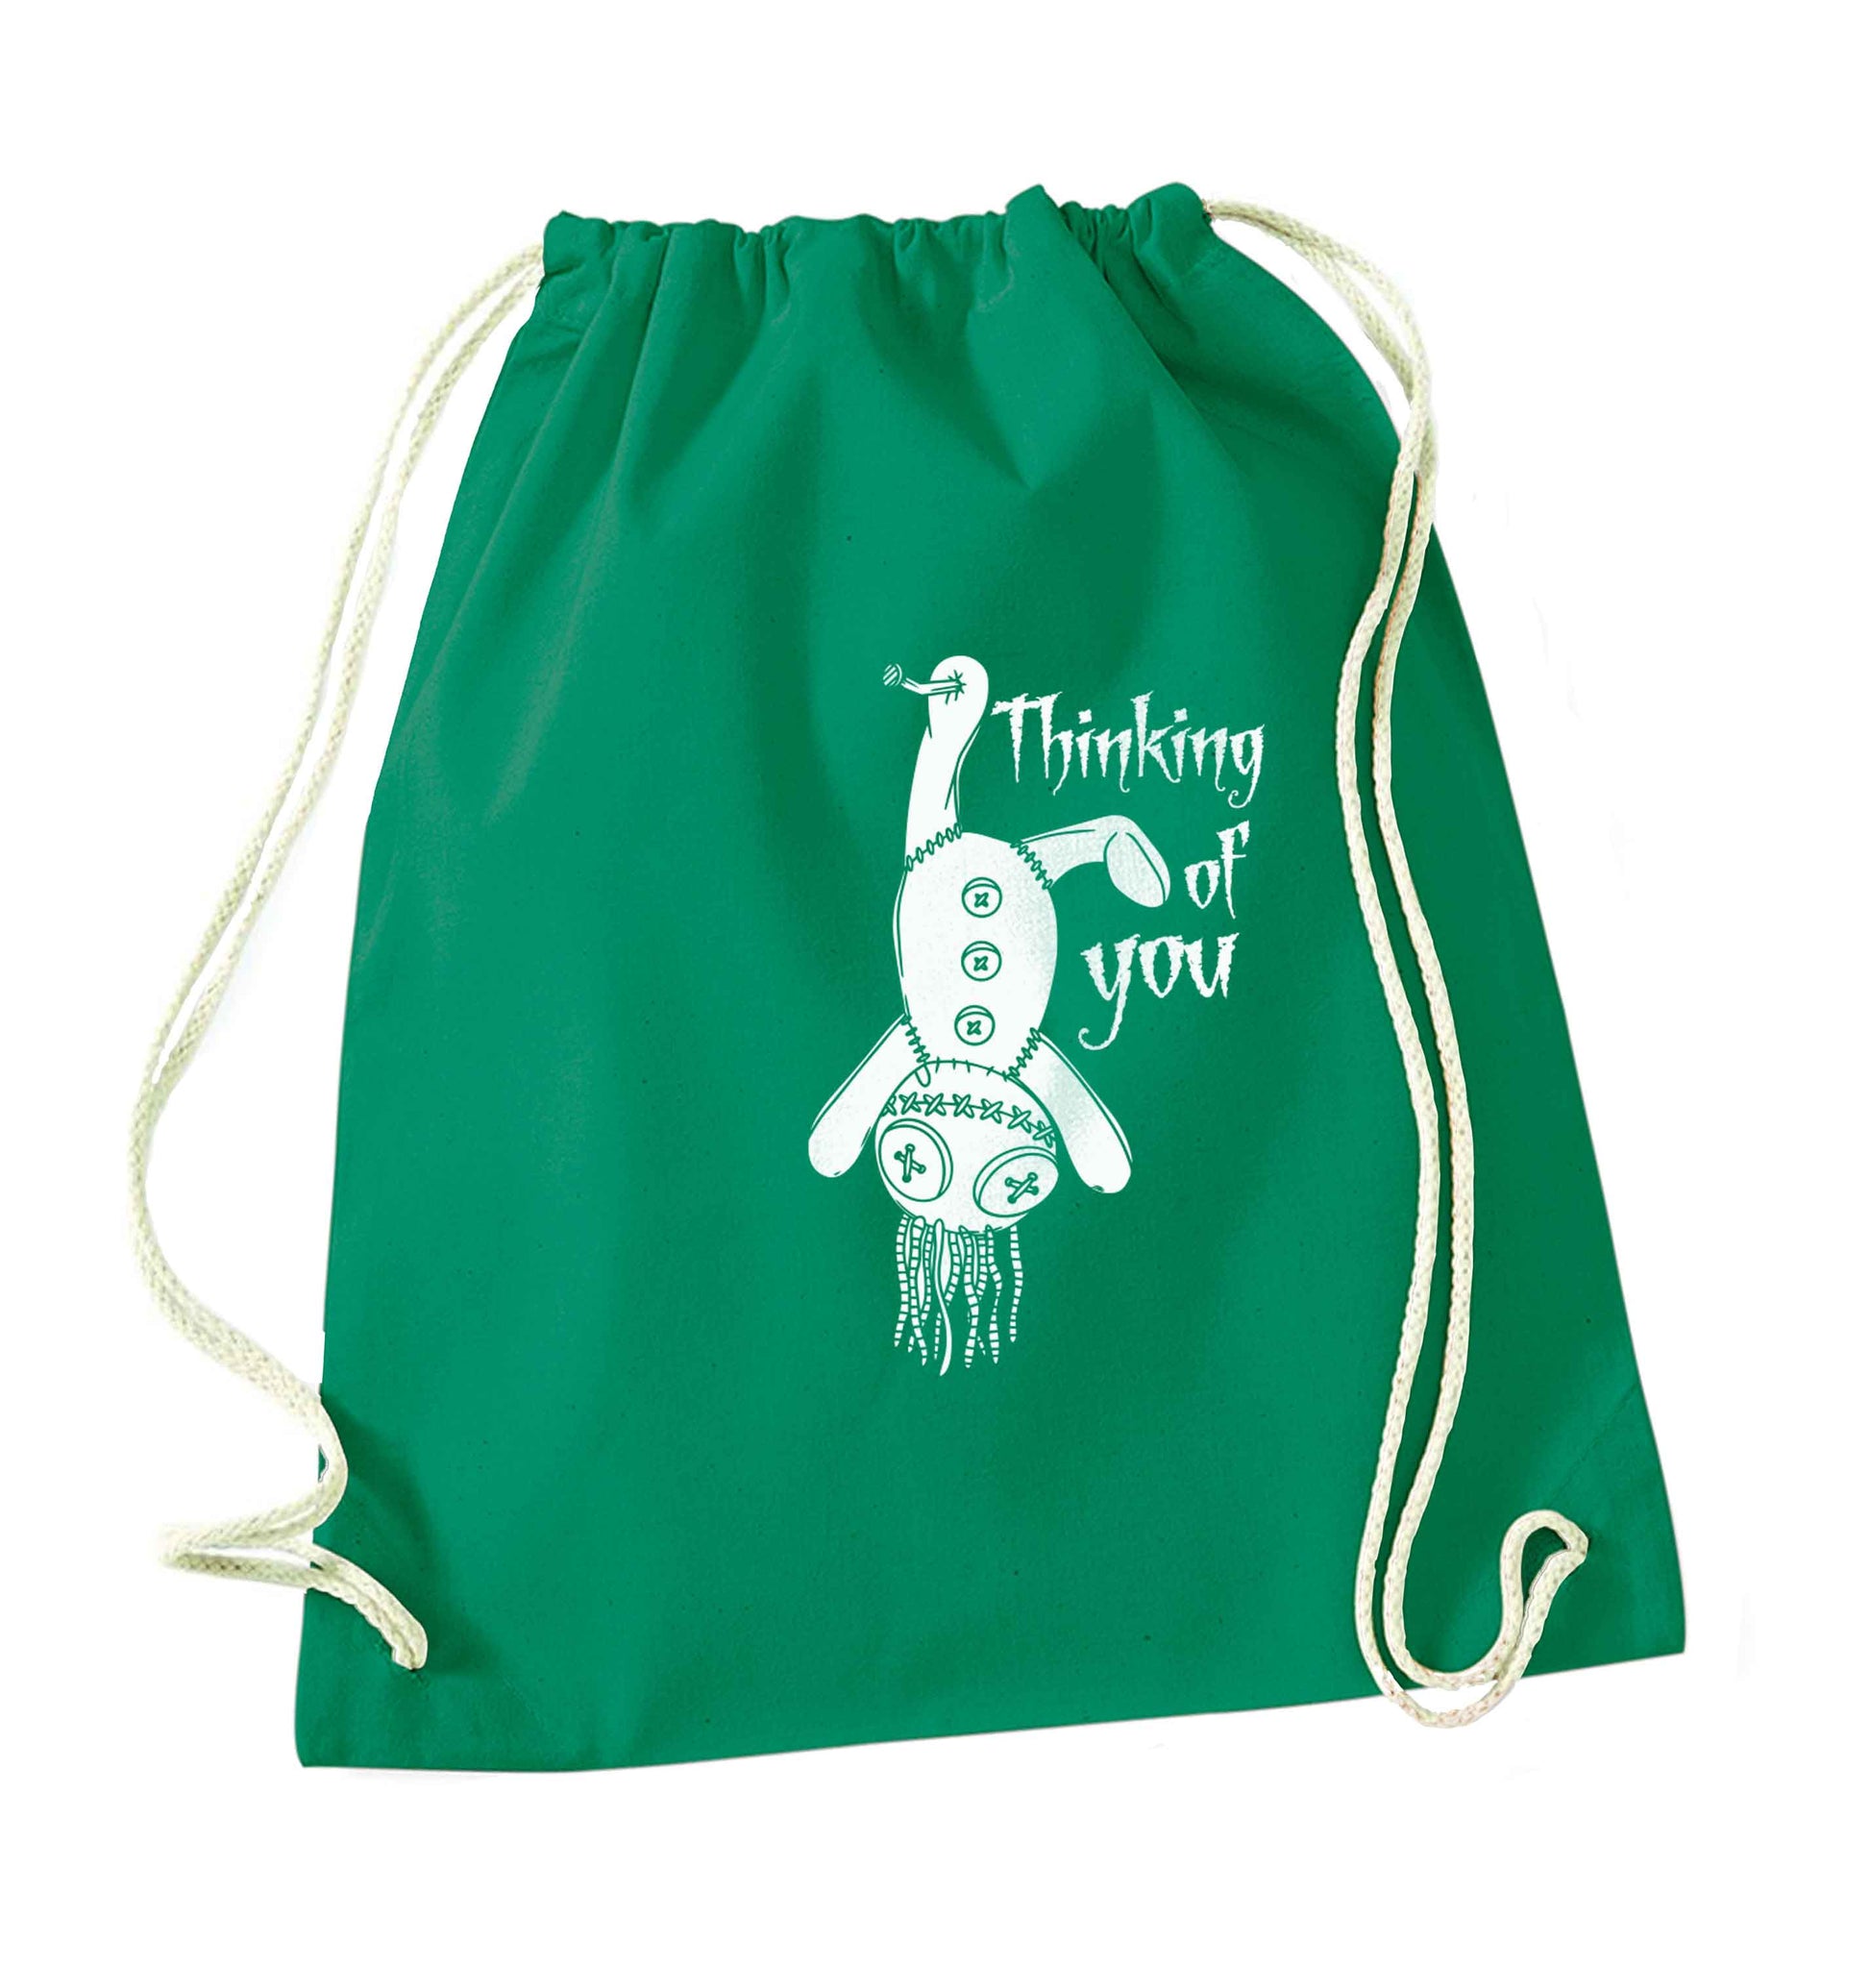 Thinking of you green drawstring bag